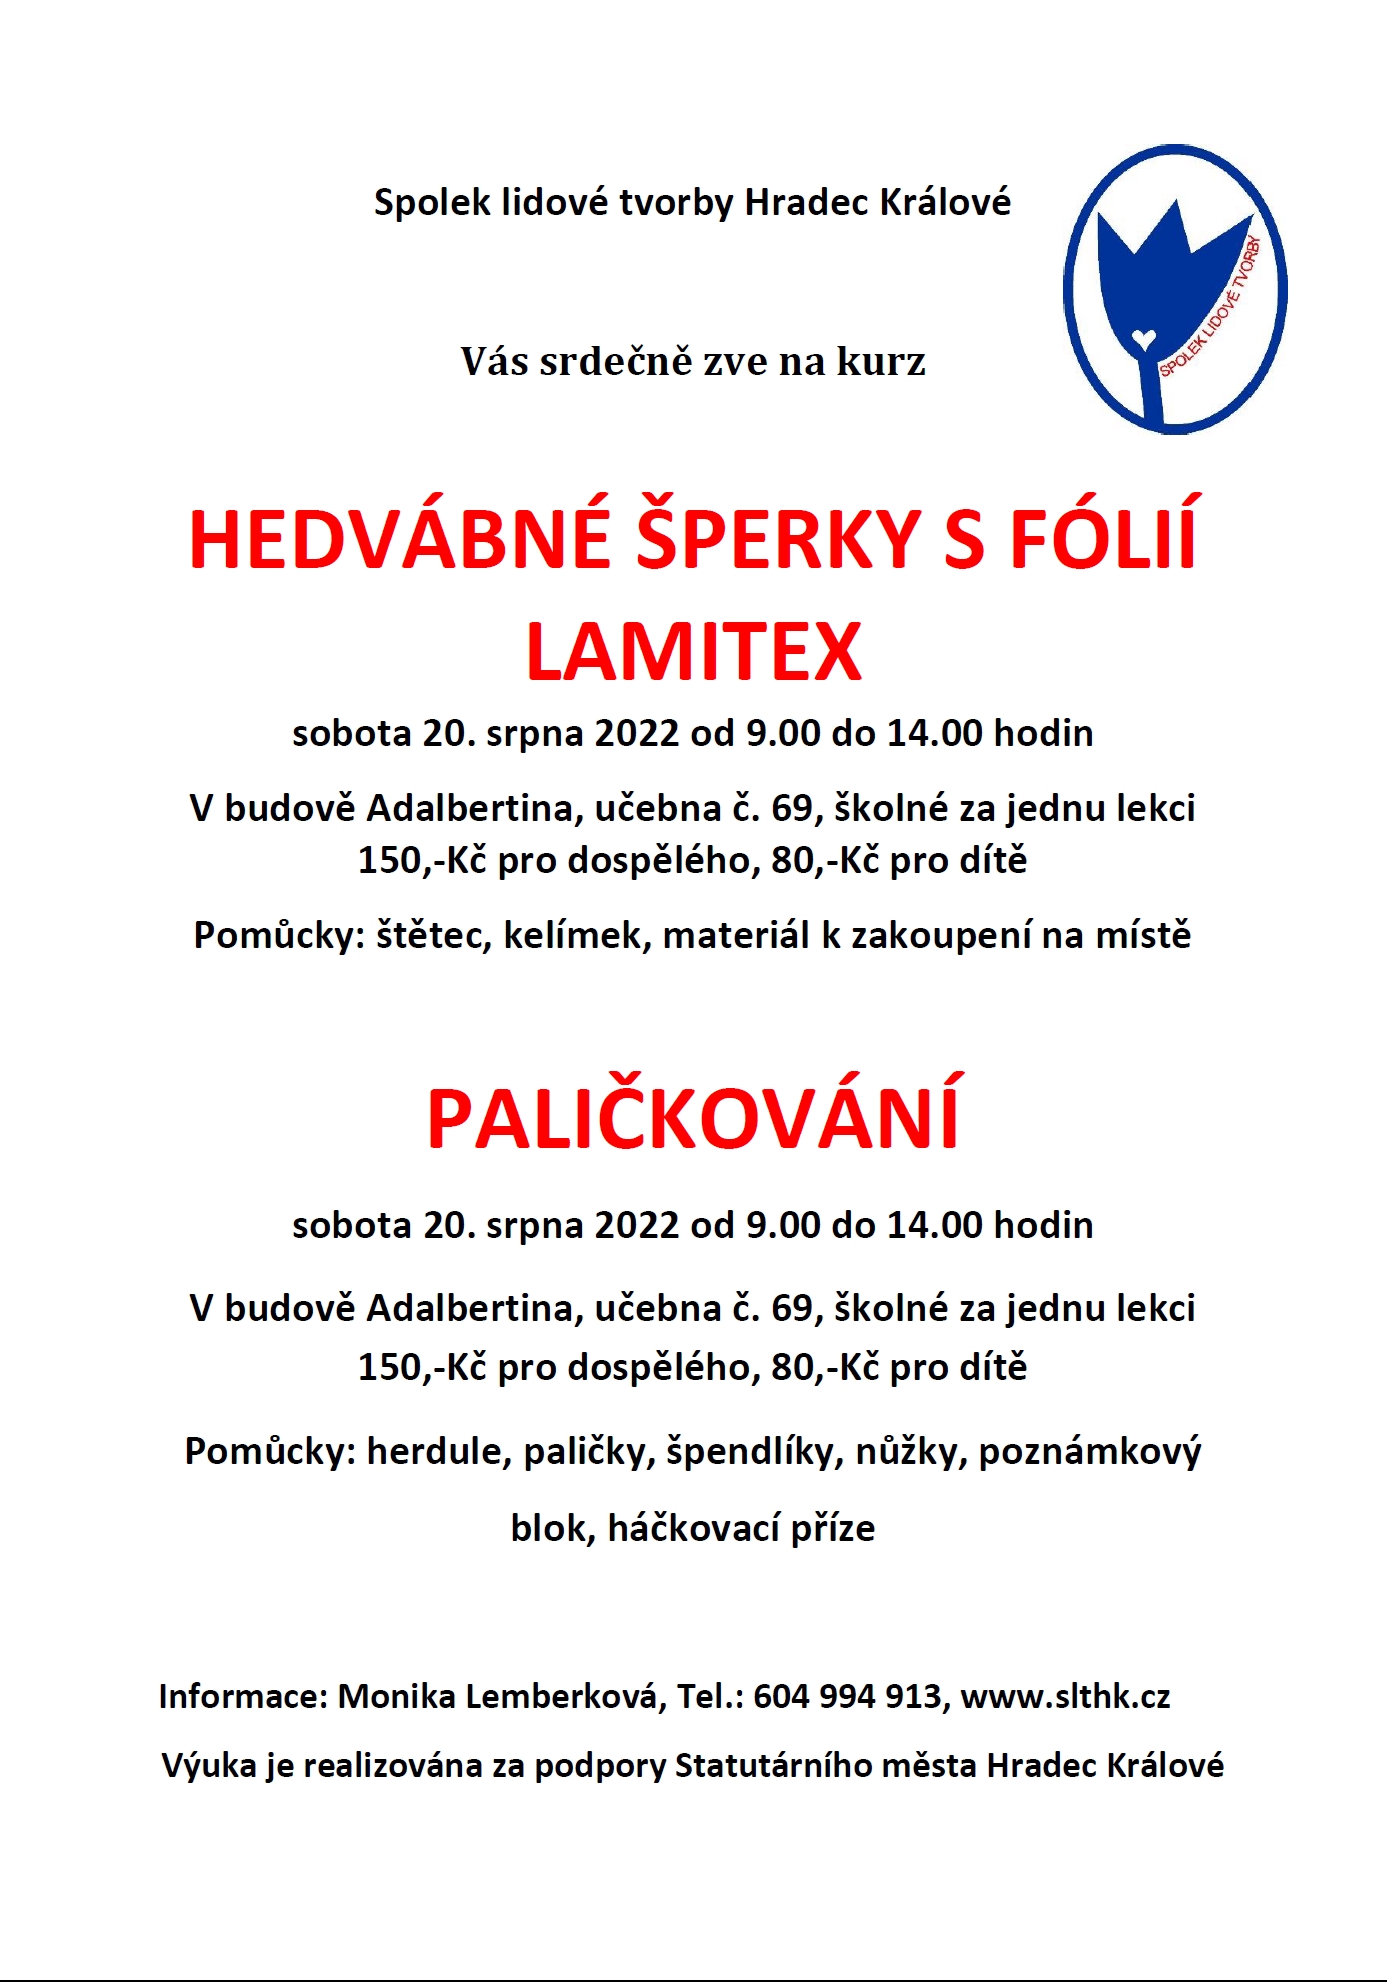 Spolek lidové tvorby Hradec Králové: HEDVÁBNÉ ŠPERKY S FÓLIÍ LAMITEX, PALIČKOVÁNÍ